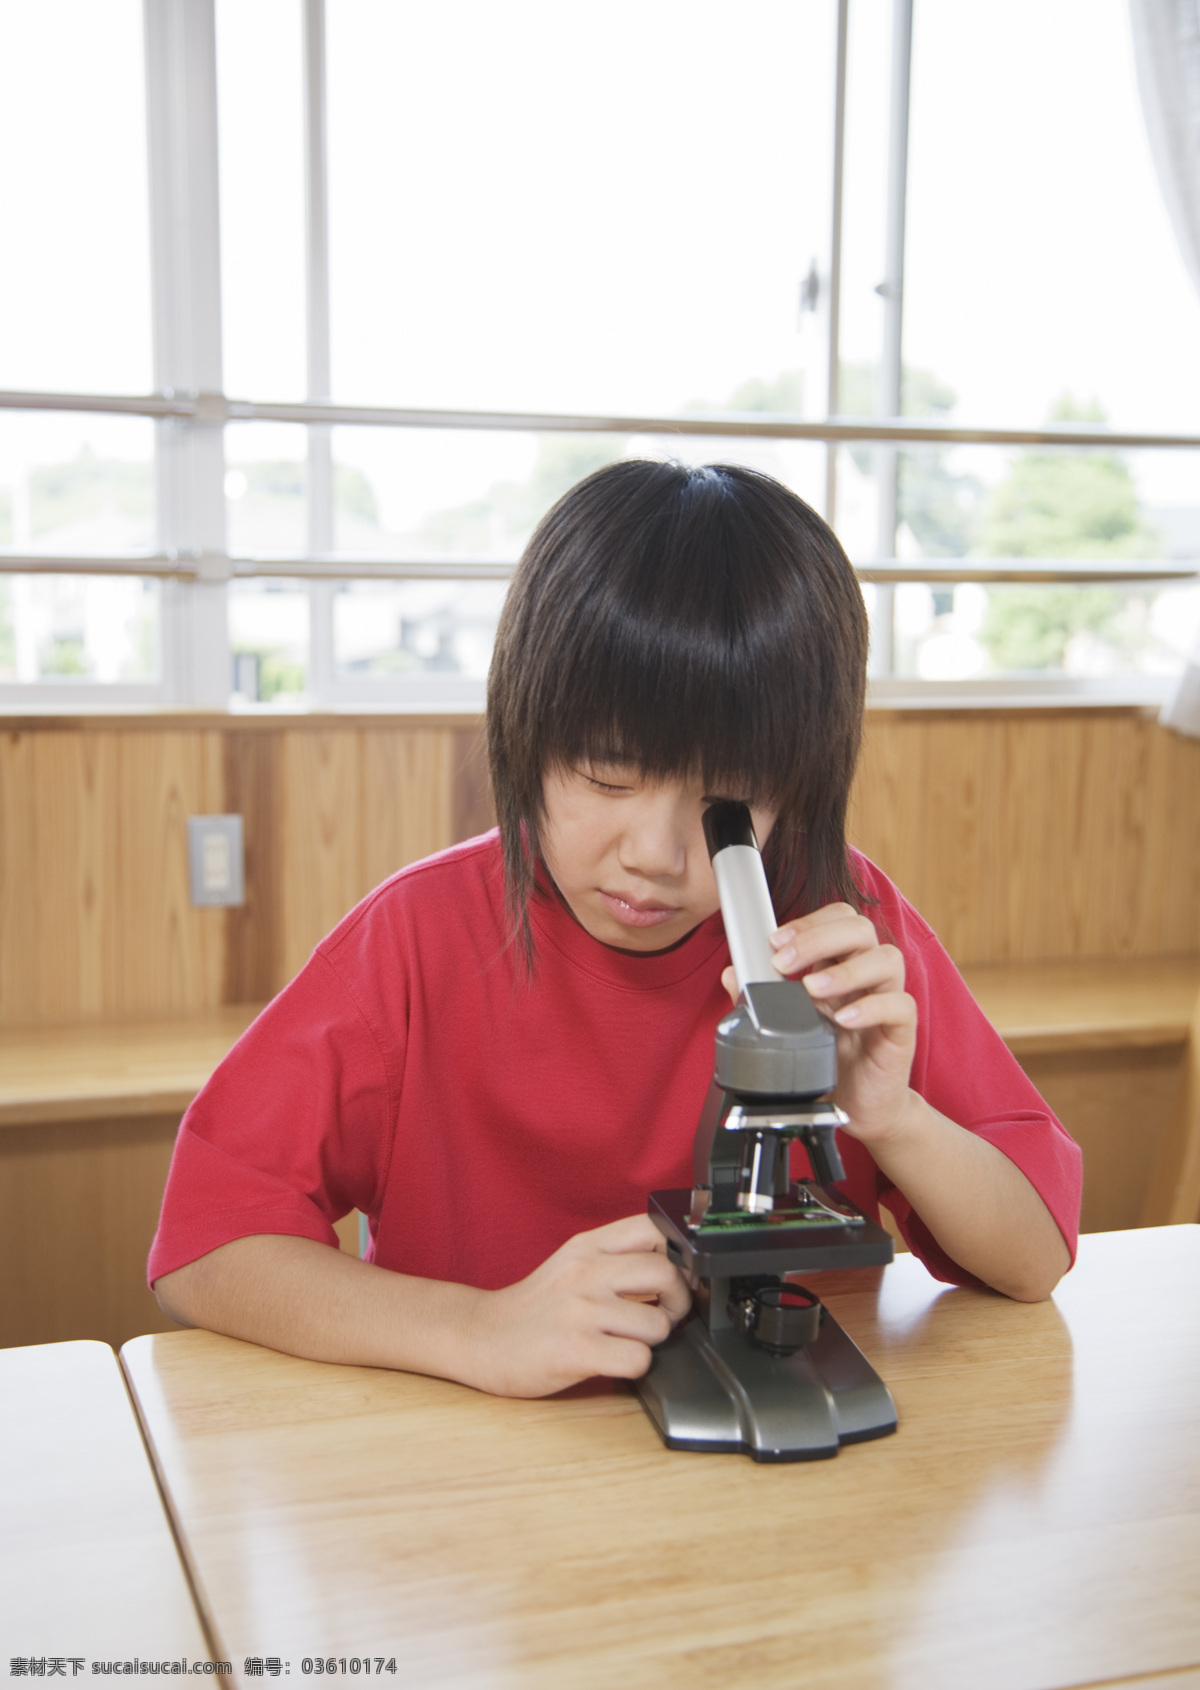 生物课 上 小女孩 快乐儿童 观察 显微镜 学习 女生 小学 孩子 学生 同学 学校 校园 教学 教育 高清图片 生活人物 人物图片